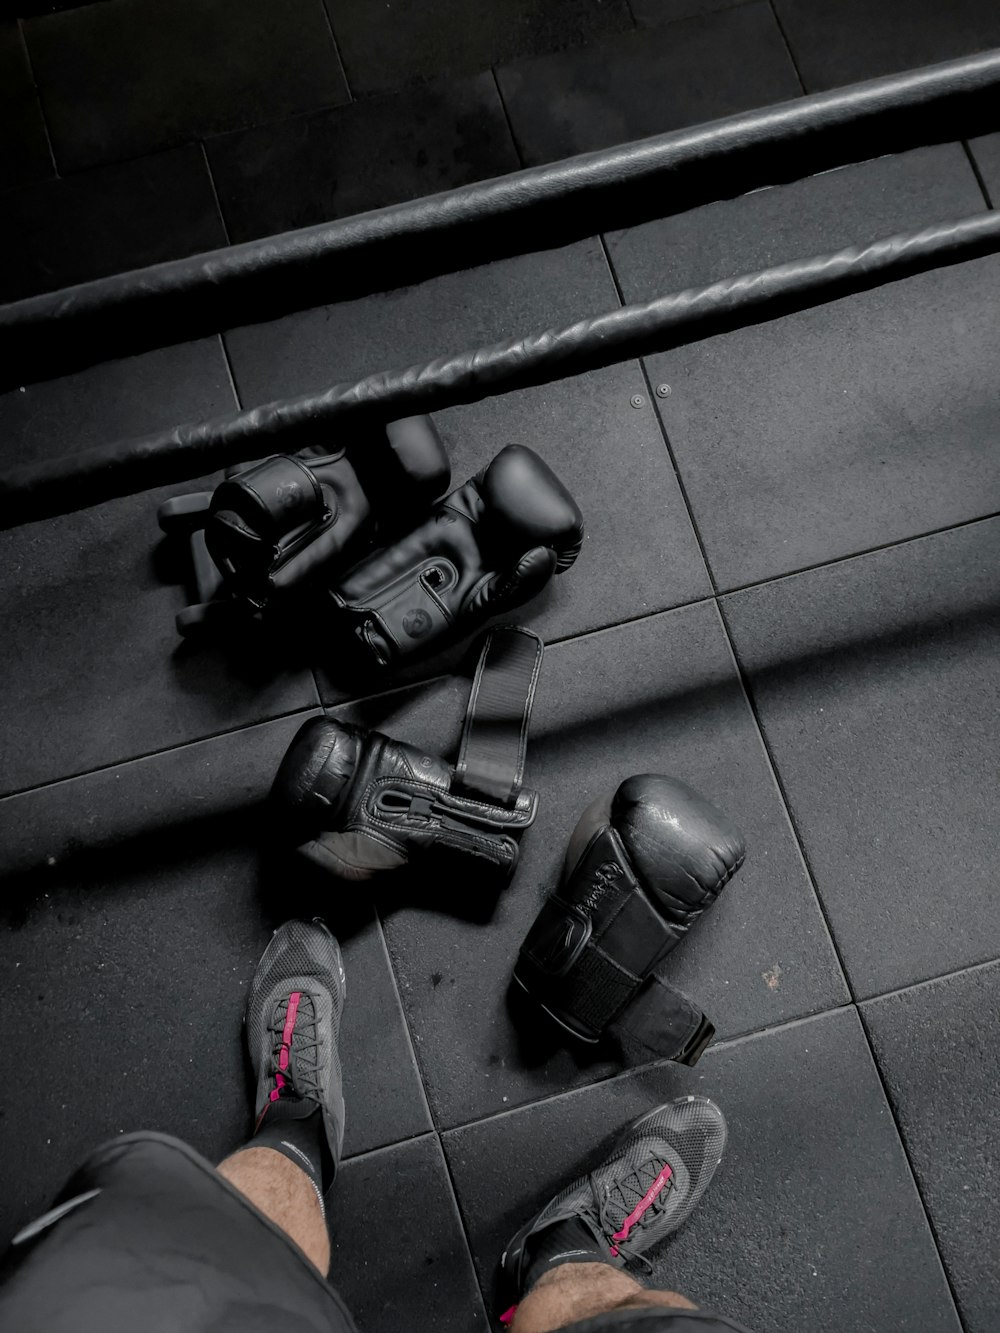 Una persona parada en un piso de baldosas junto a un par de zapatos negros